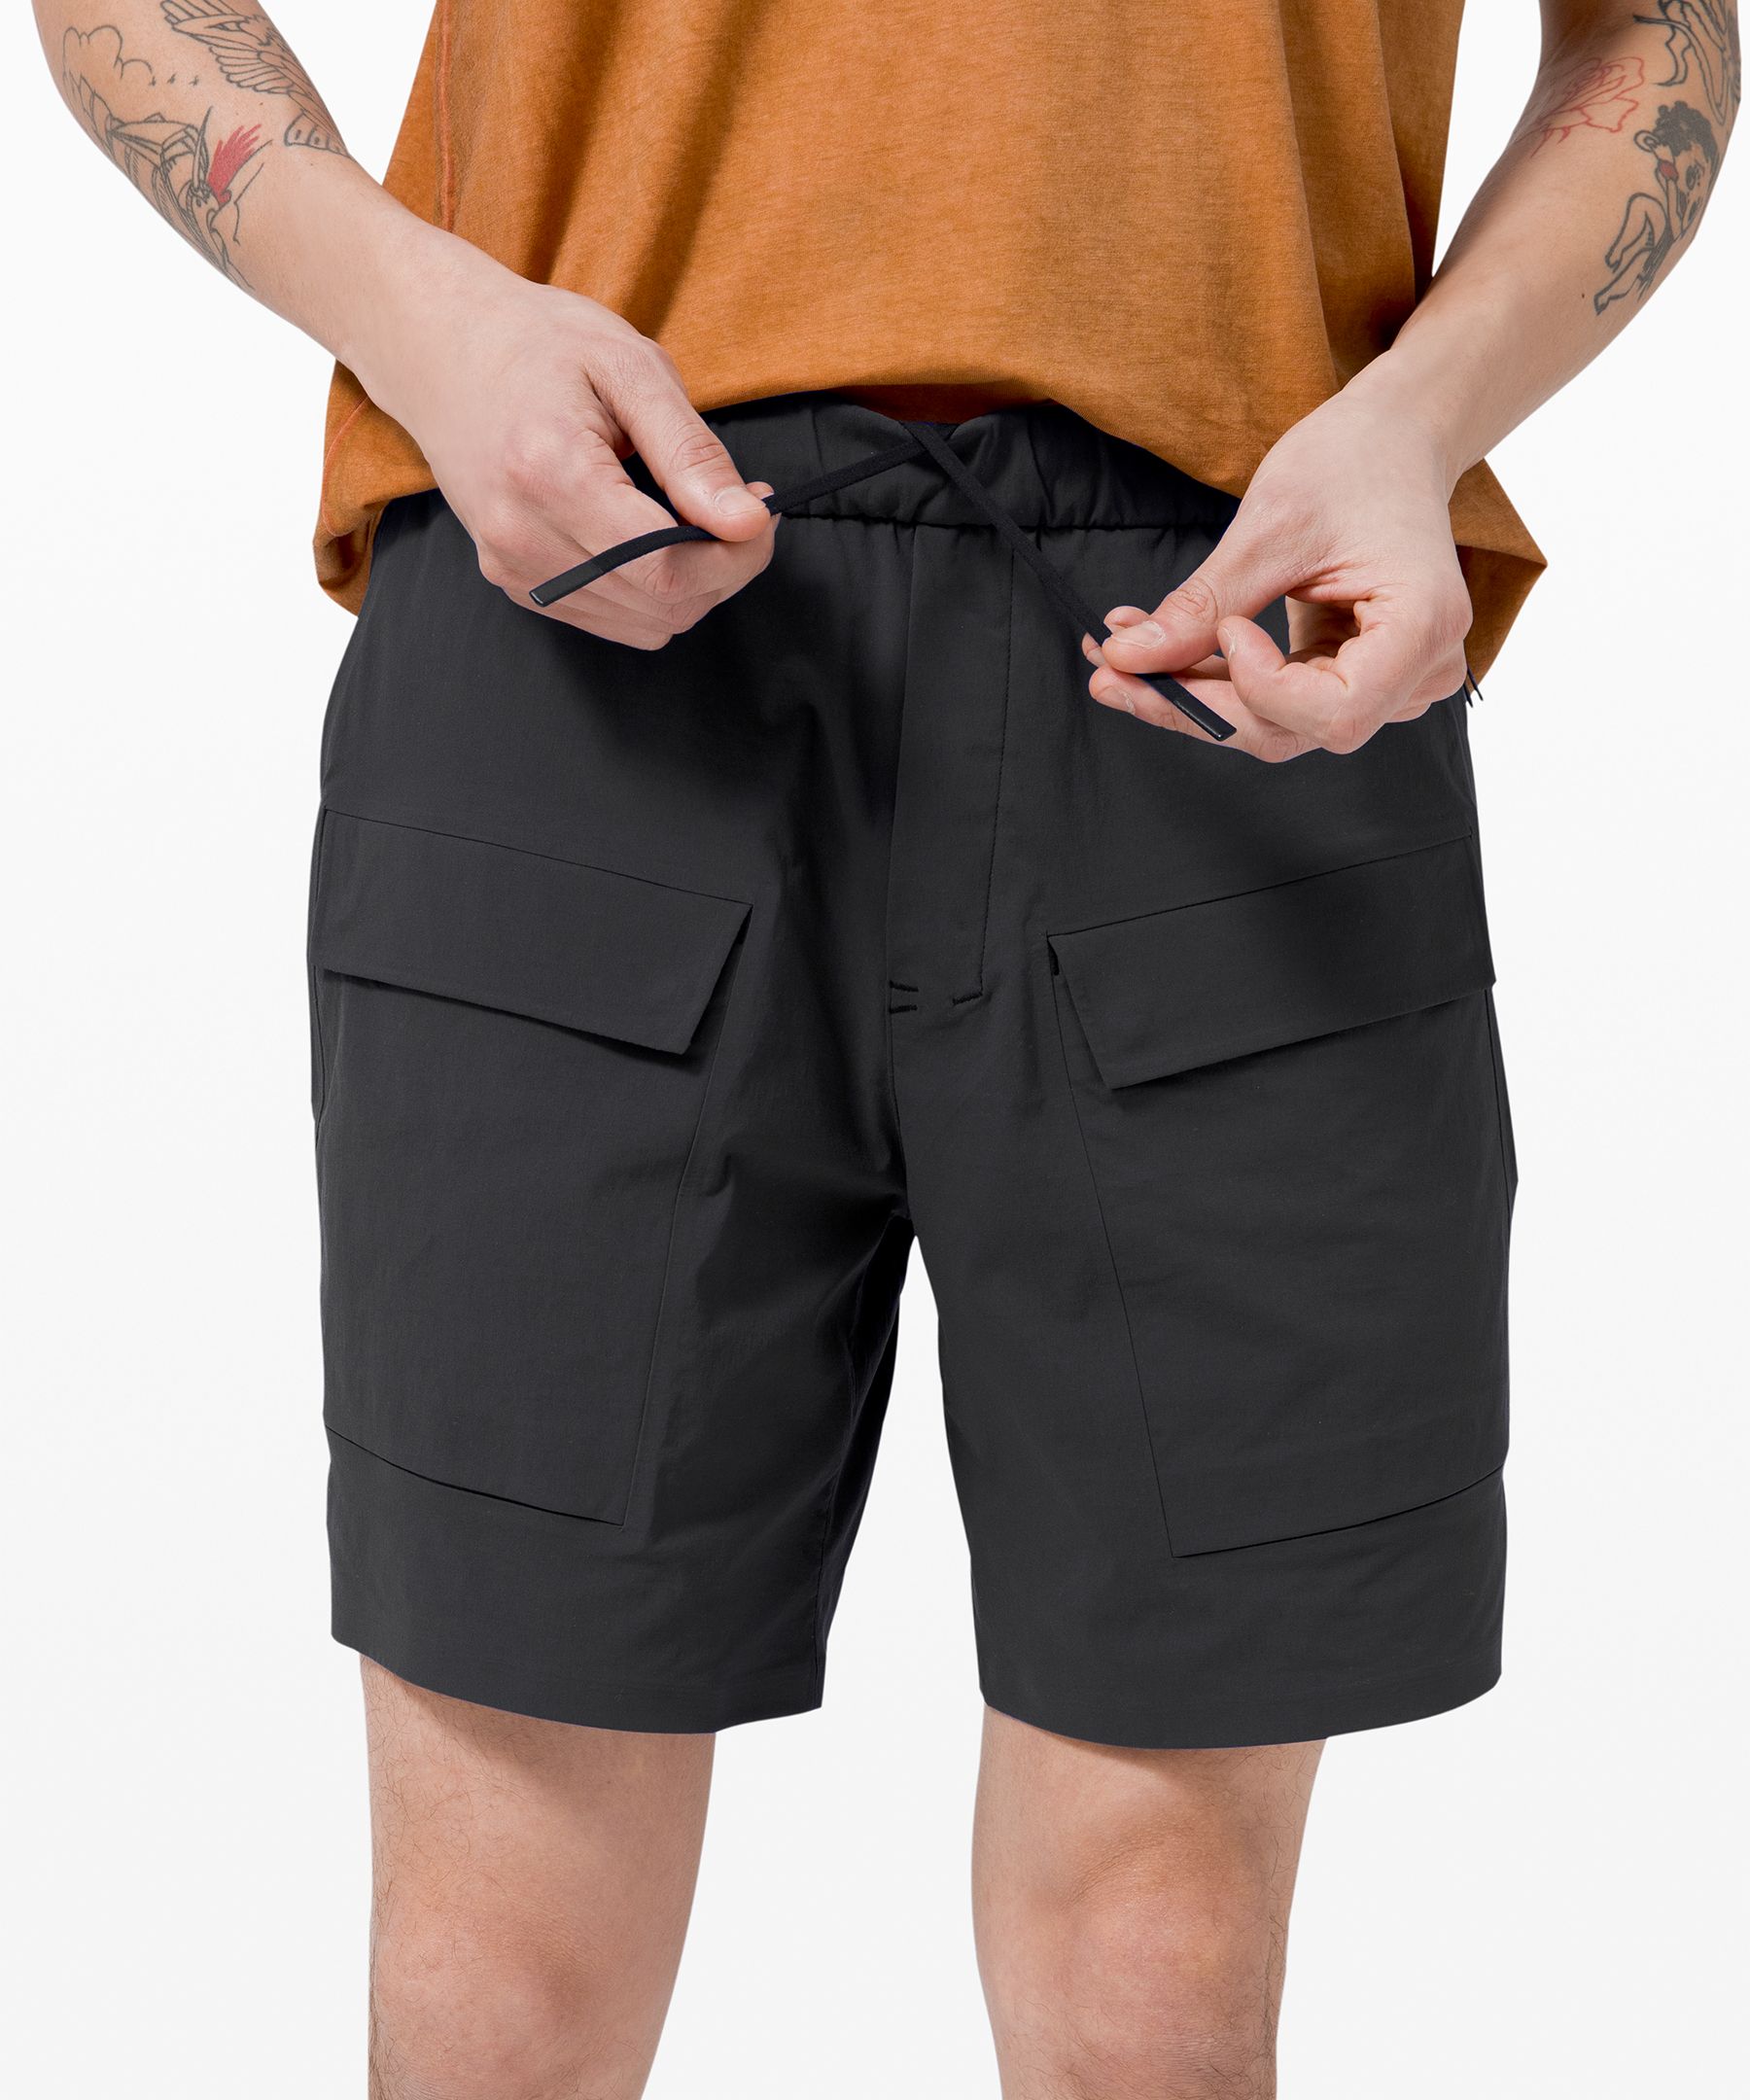 lululemon cargo shorts